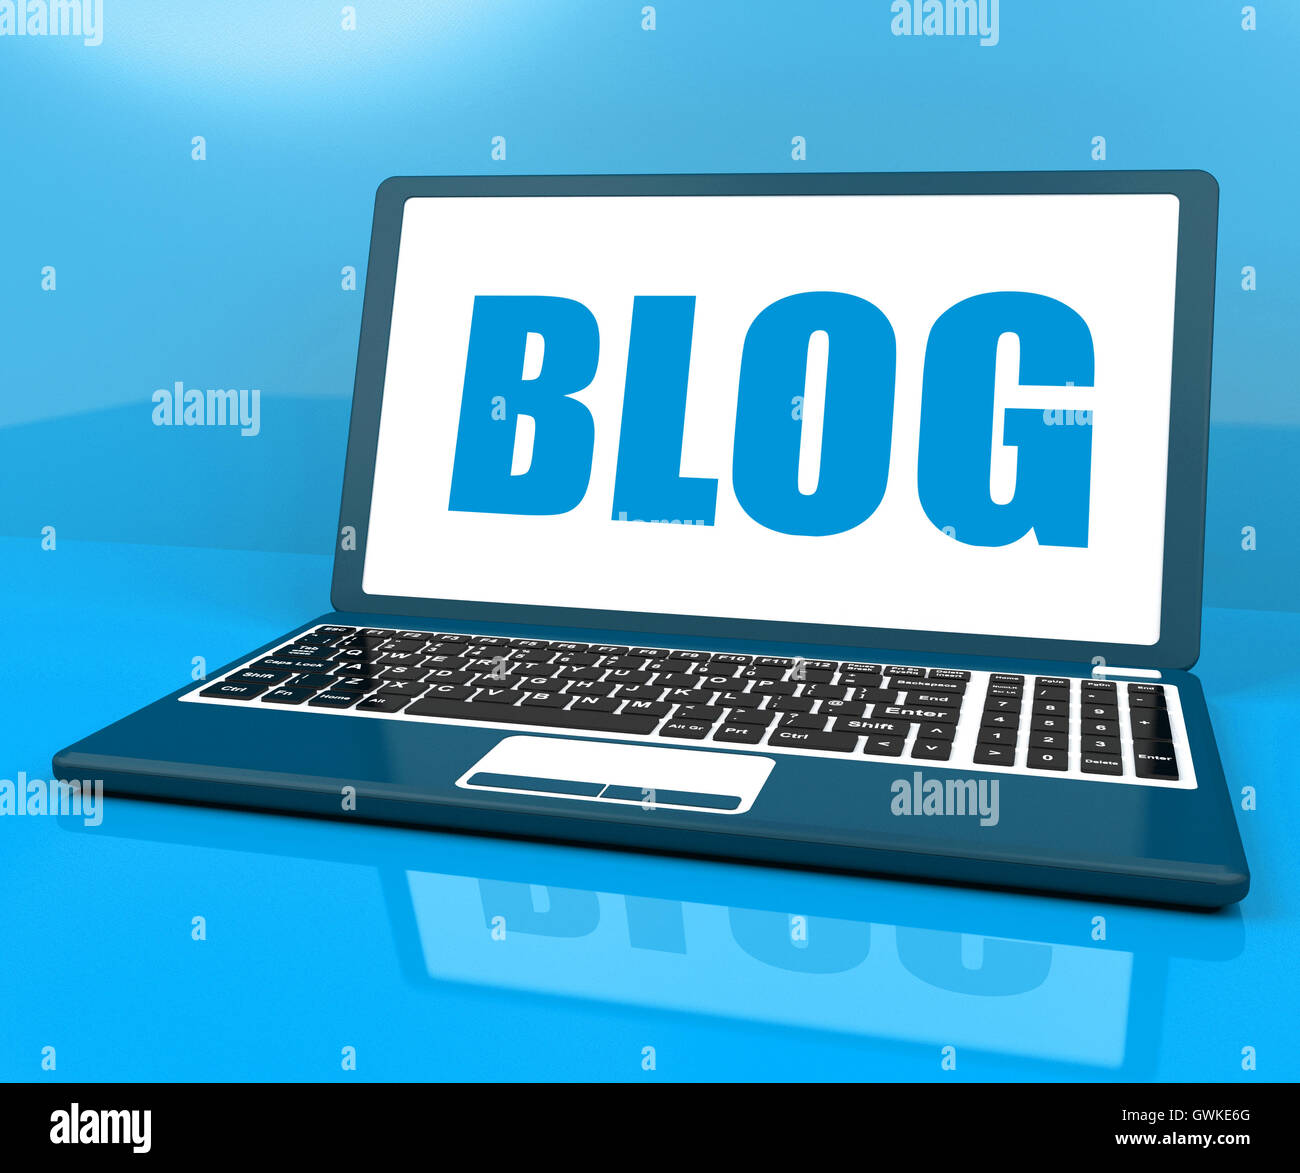 Blog On Laptop Shows Blogging Or Weblog Website Stock Photo